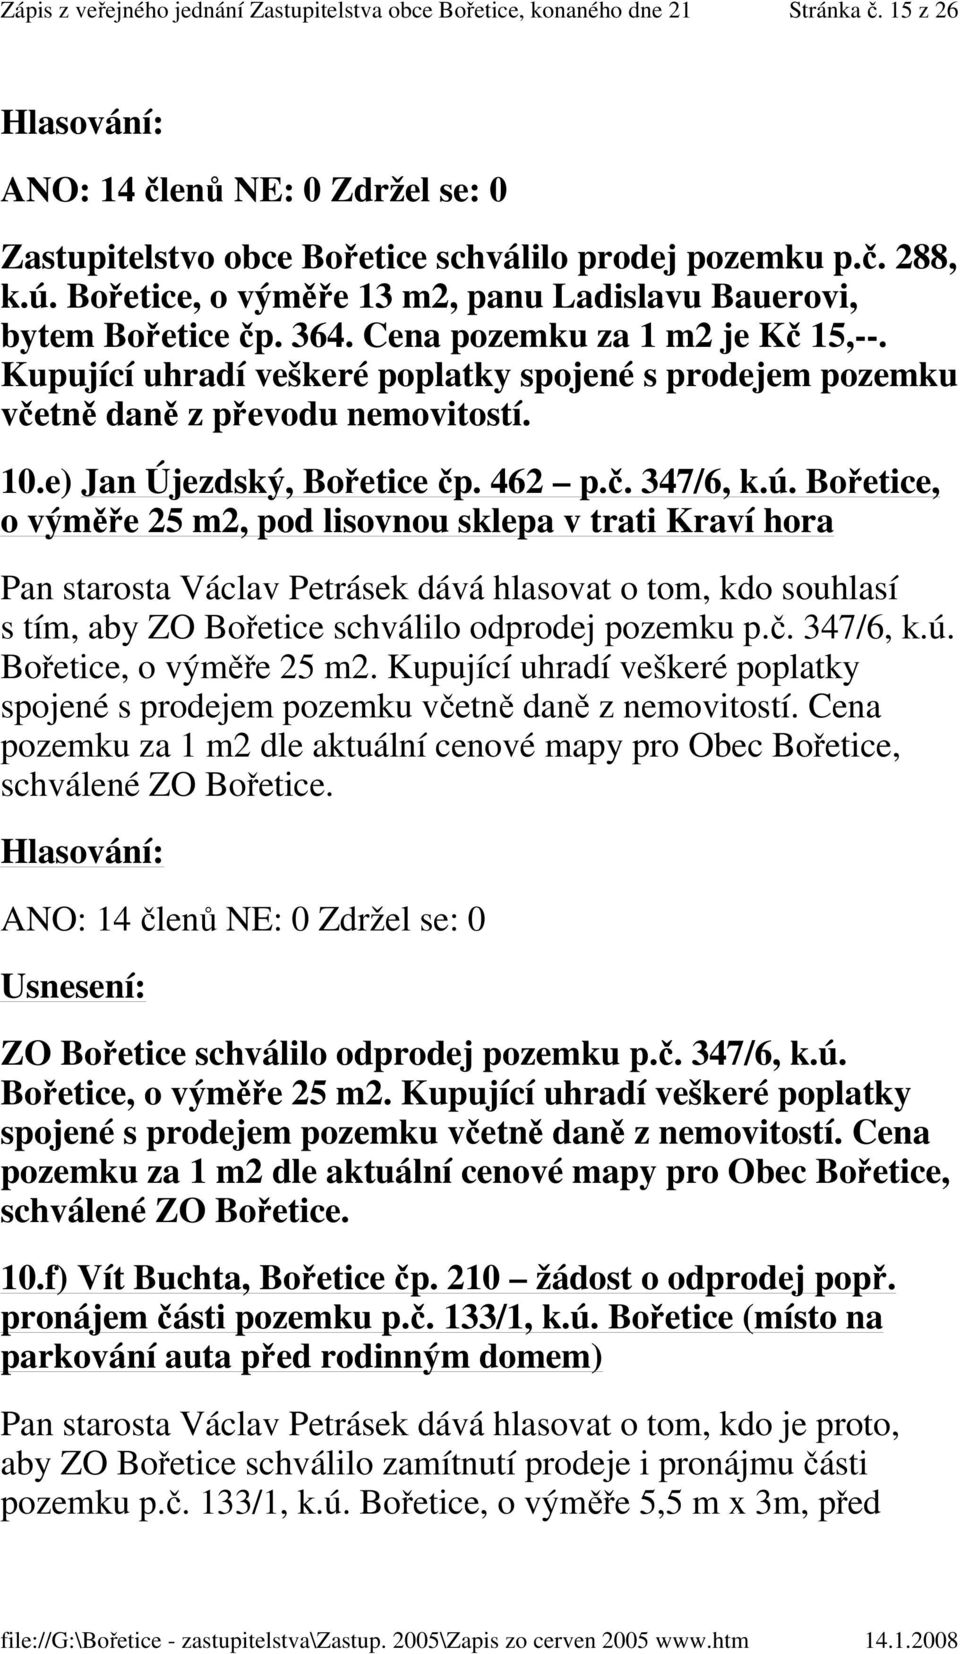 Bořetice, o výměře 25 m2, pod lisovnou sklepa v trati Kraví hora s tím, aby ZO Bořetice schválilo odprodej pozemku p.č. 347/6, k.ú. Bořetice, o výměře 25 m2.